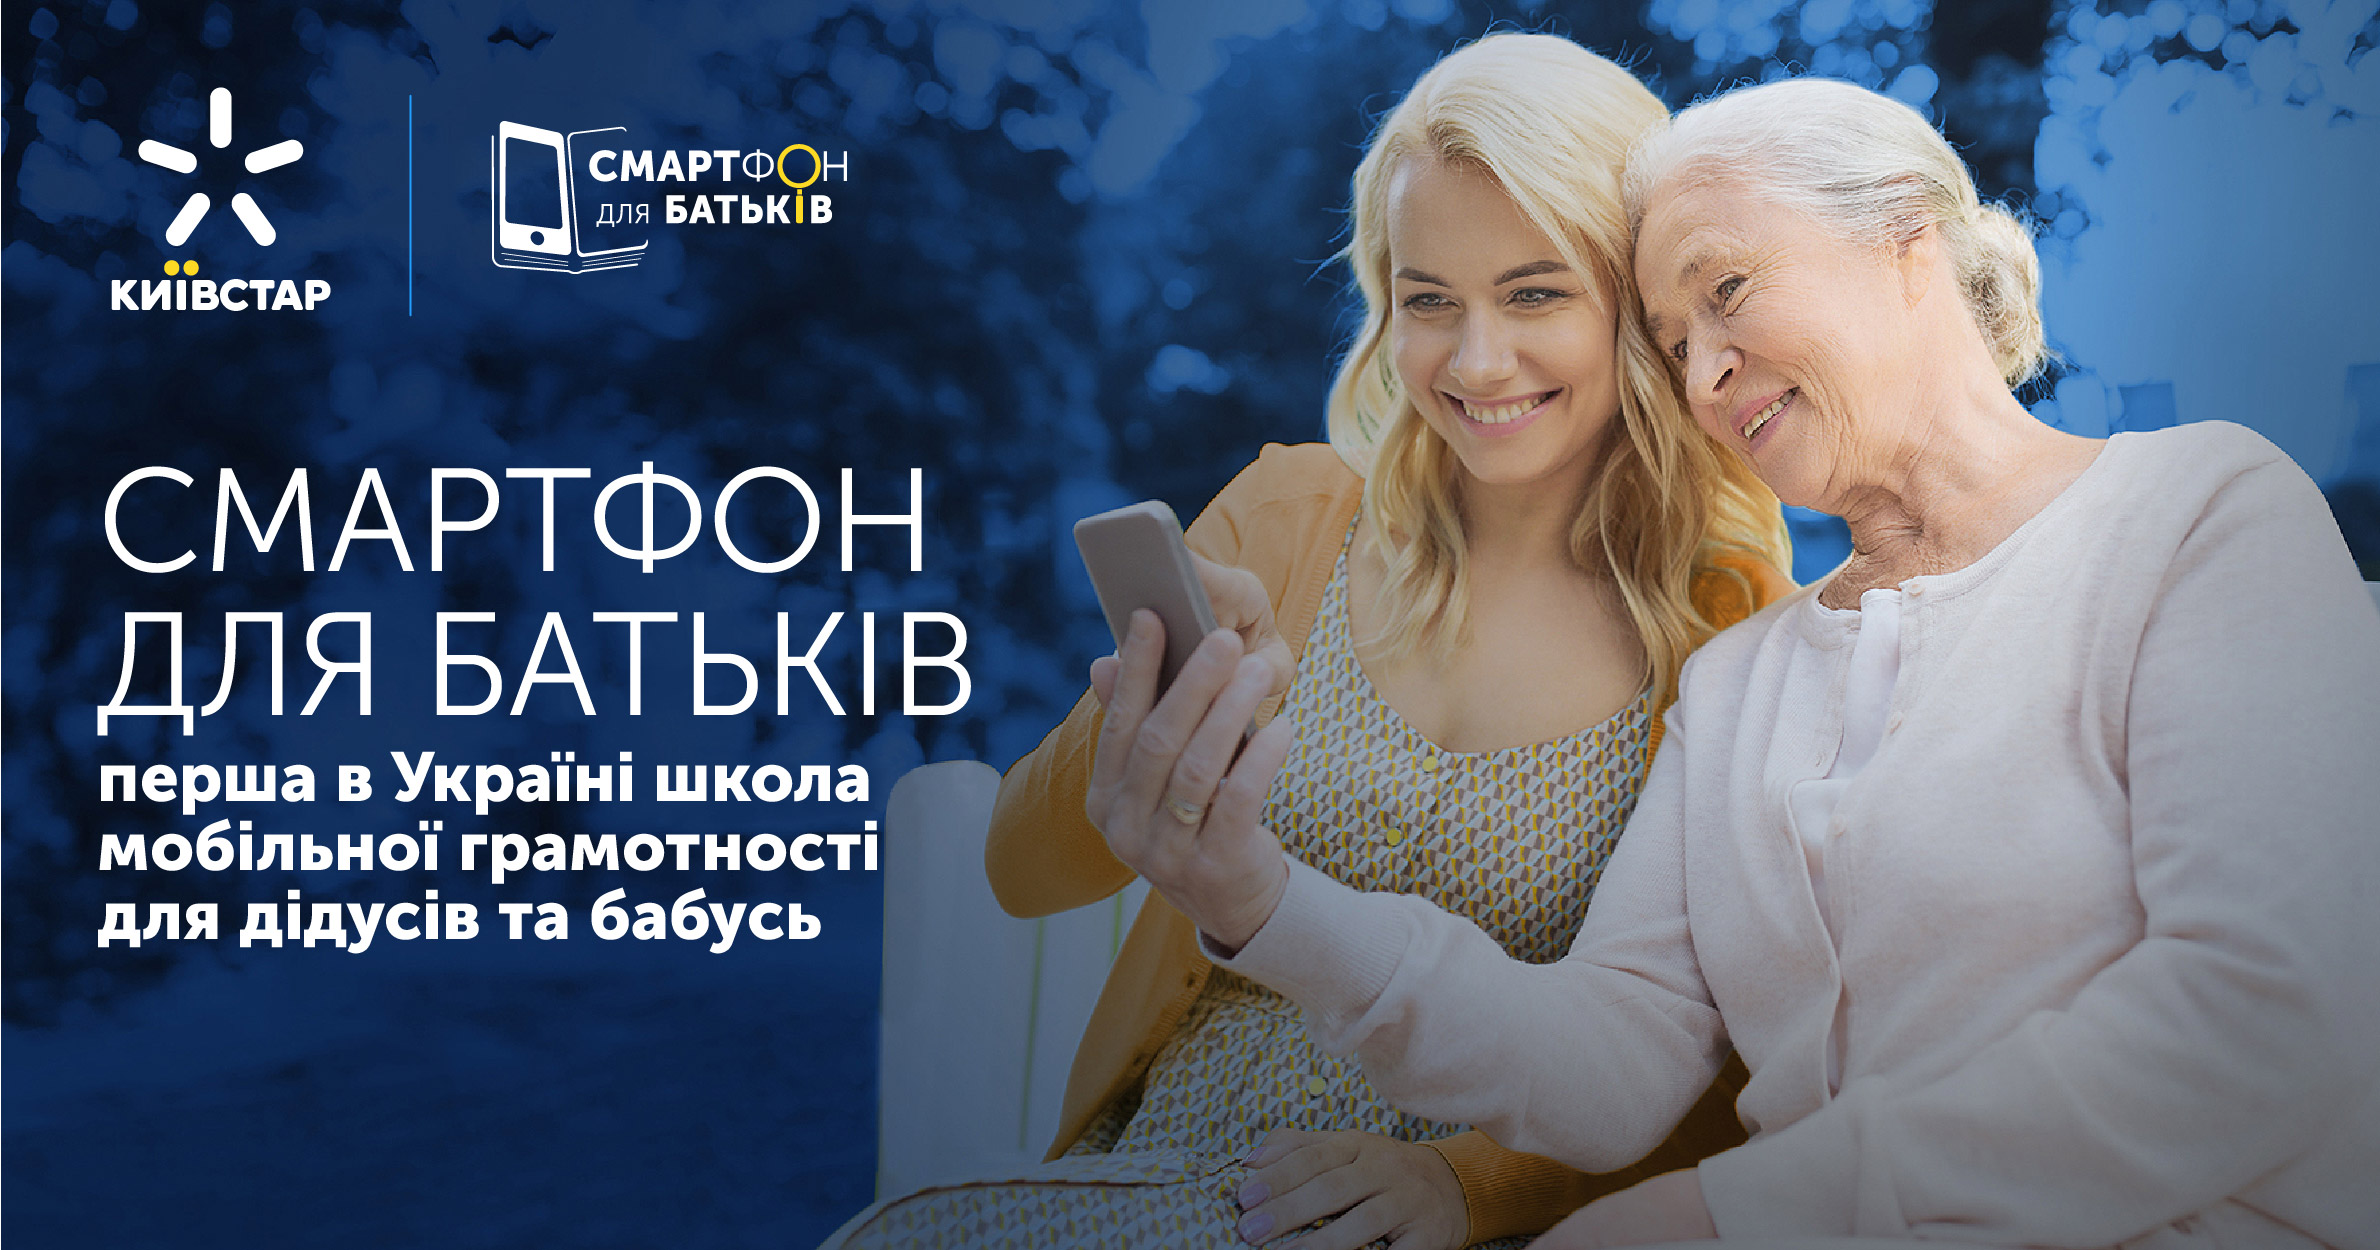 Смартфон для родителей: Киевстар выпустил новый сезон курса по мобильной грамотности